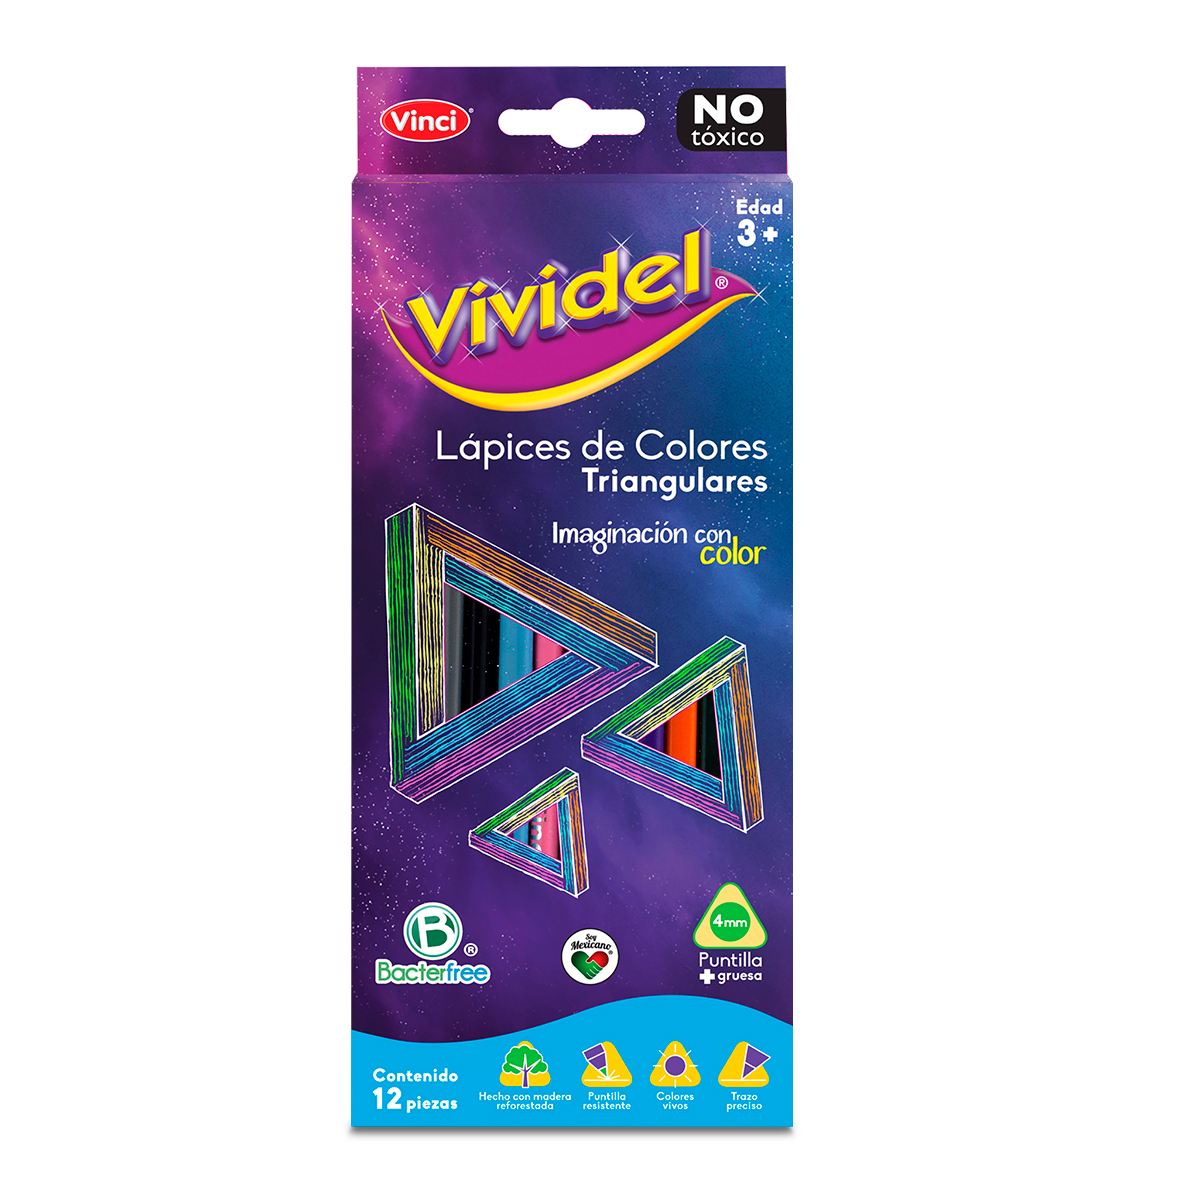 Lápices de Colores Vividel Triangulares 12 piezas